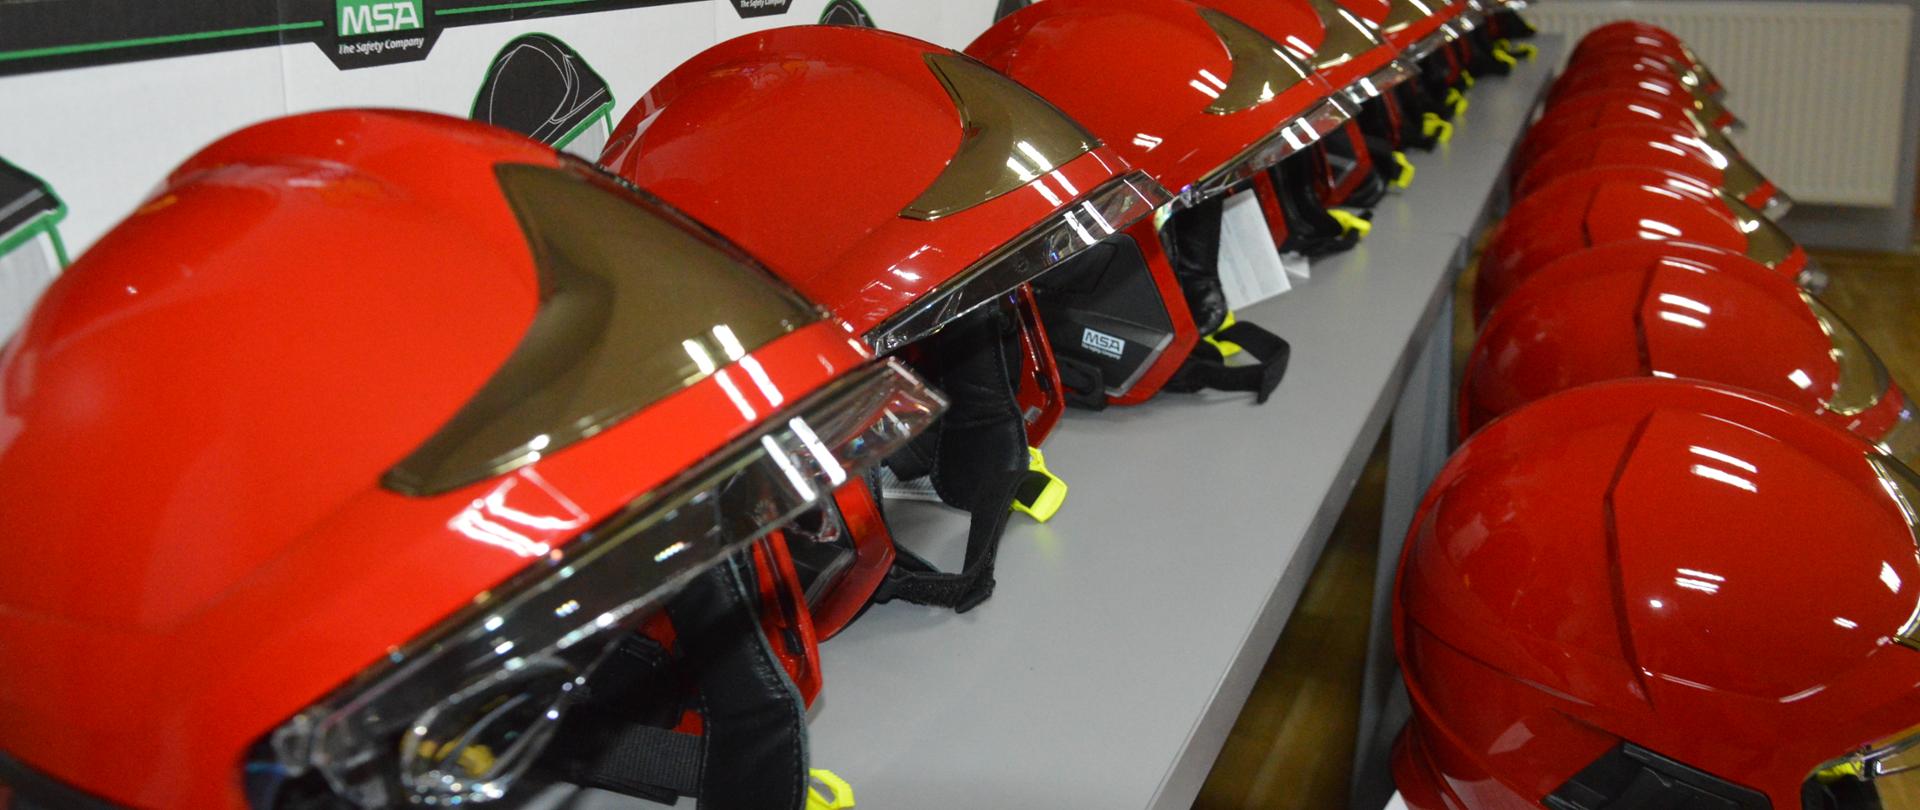 Nowe hełmy strażaków. Świetlica KP PSP w Rawiczu. Na stołach ułożone są nowe hełmy, zakupione dla strażaków JRG. Hełmy maja kolor czerwony.